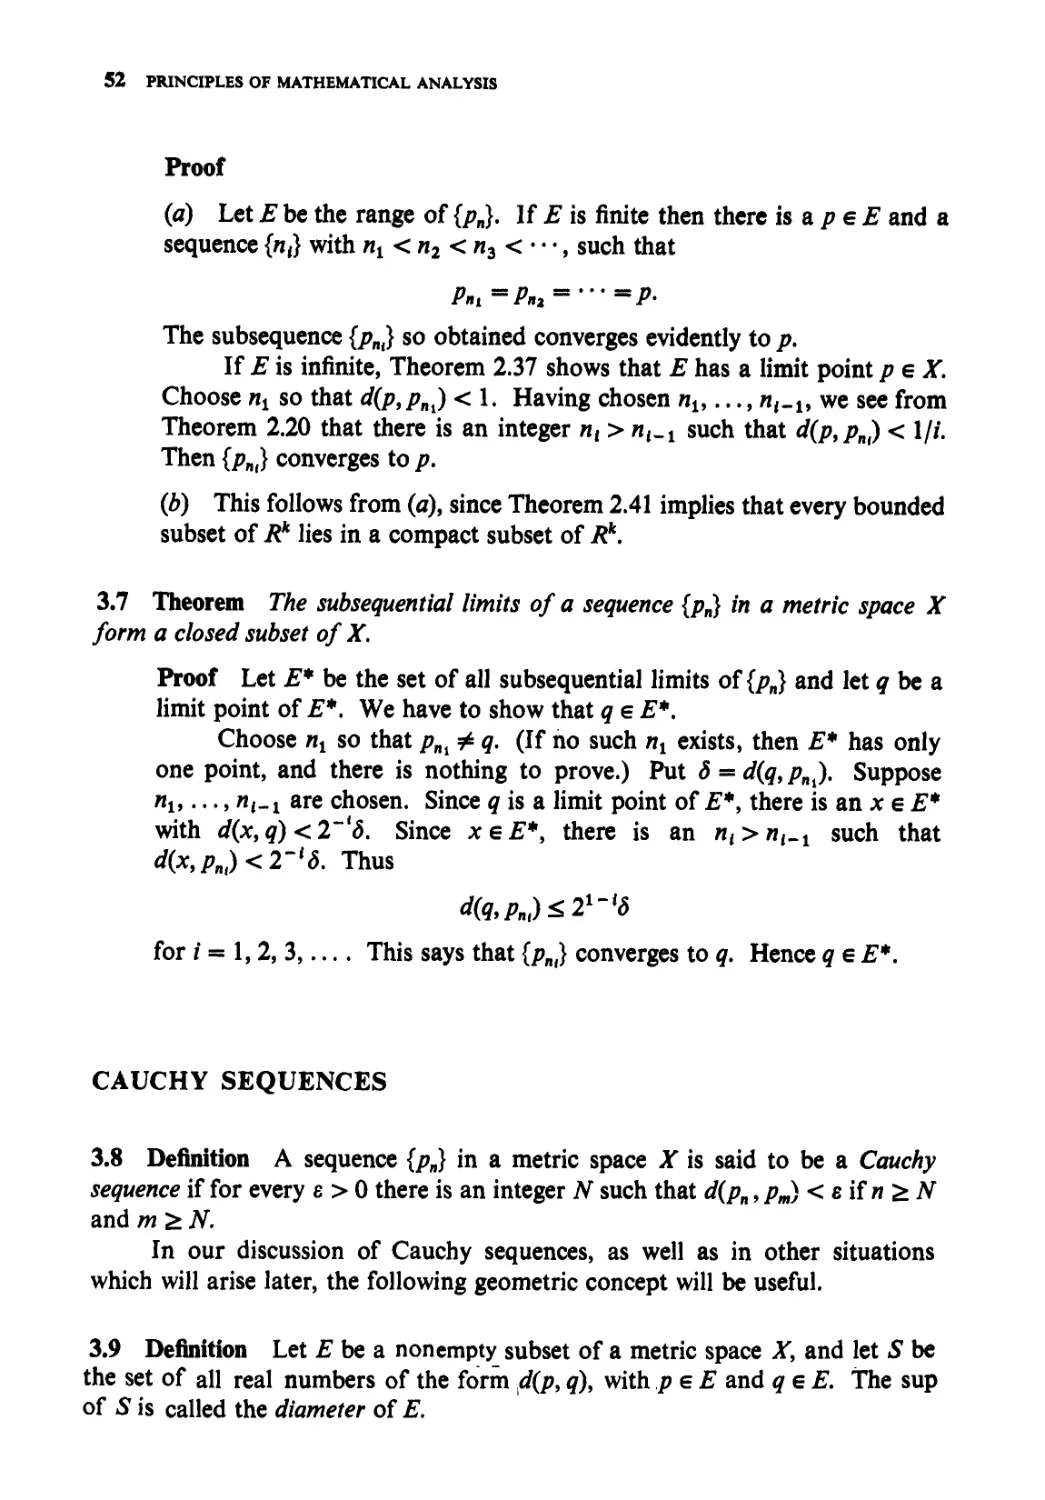 Cauchy sequences